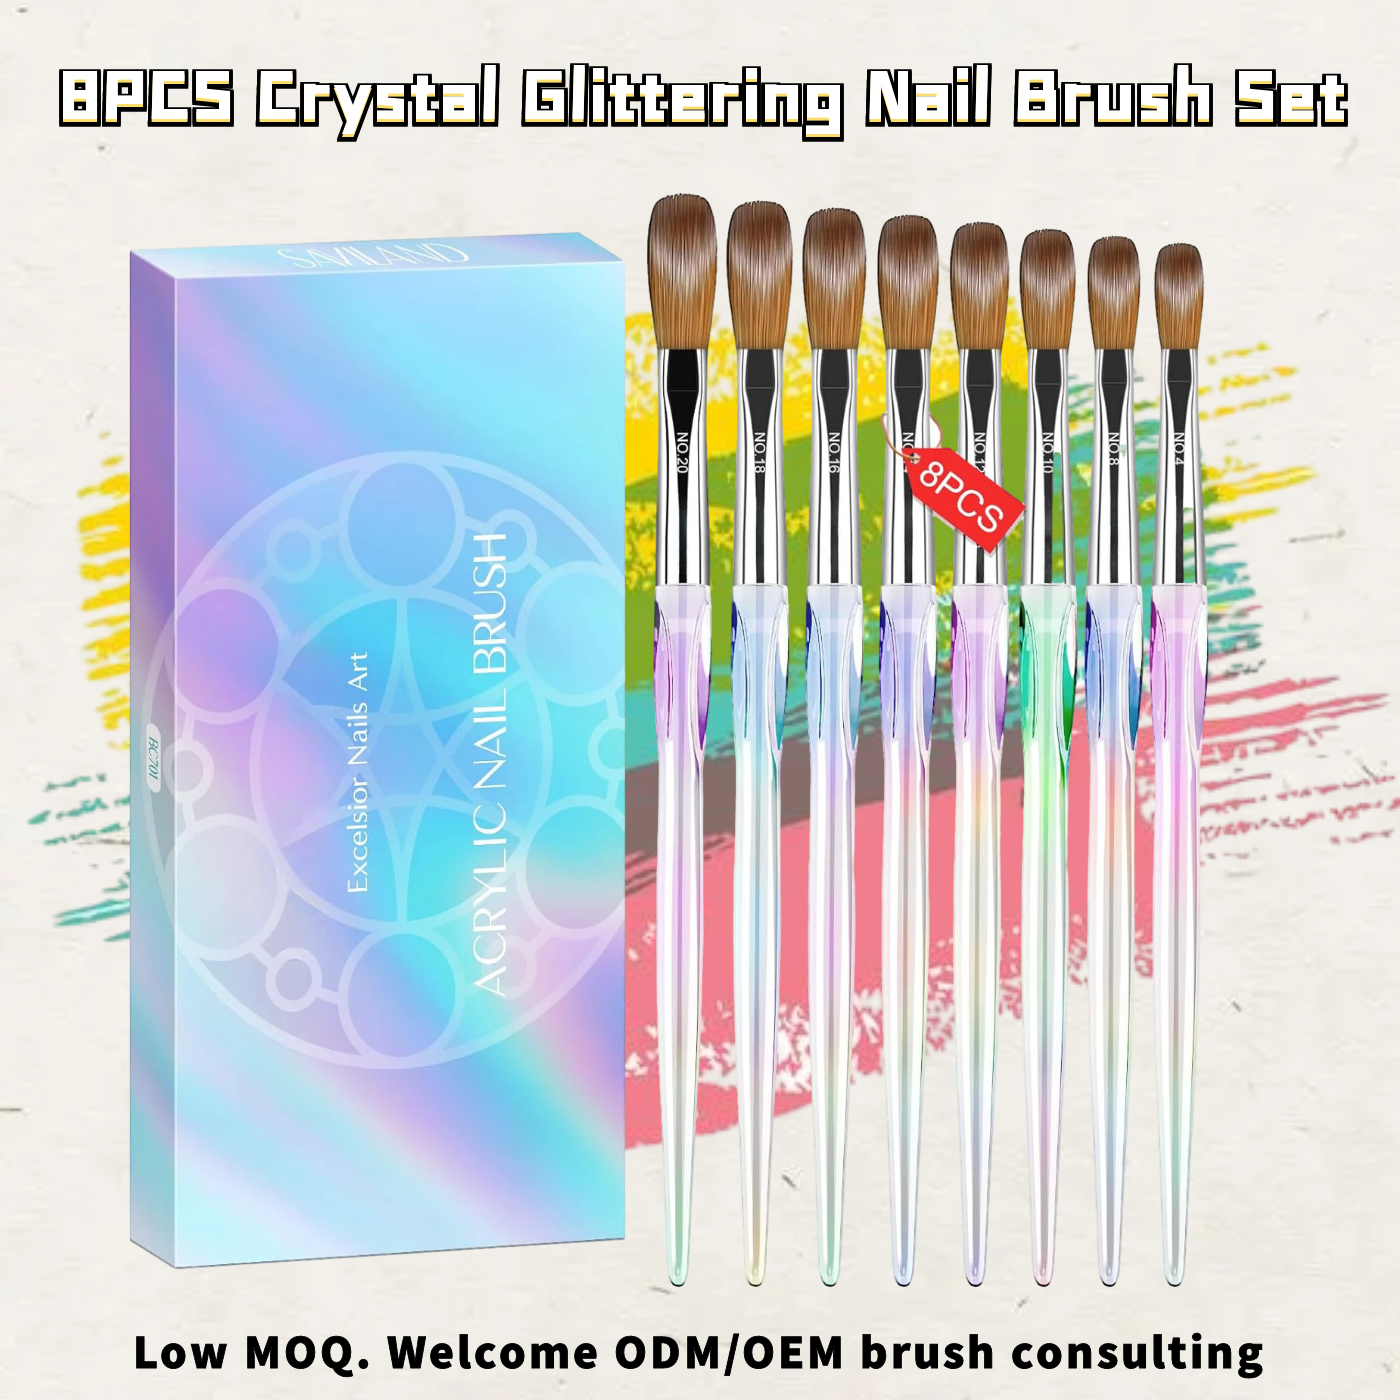 8PCS Crystal Glittering Nail Brush Set